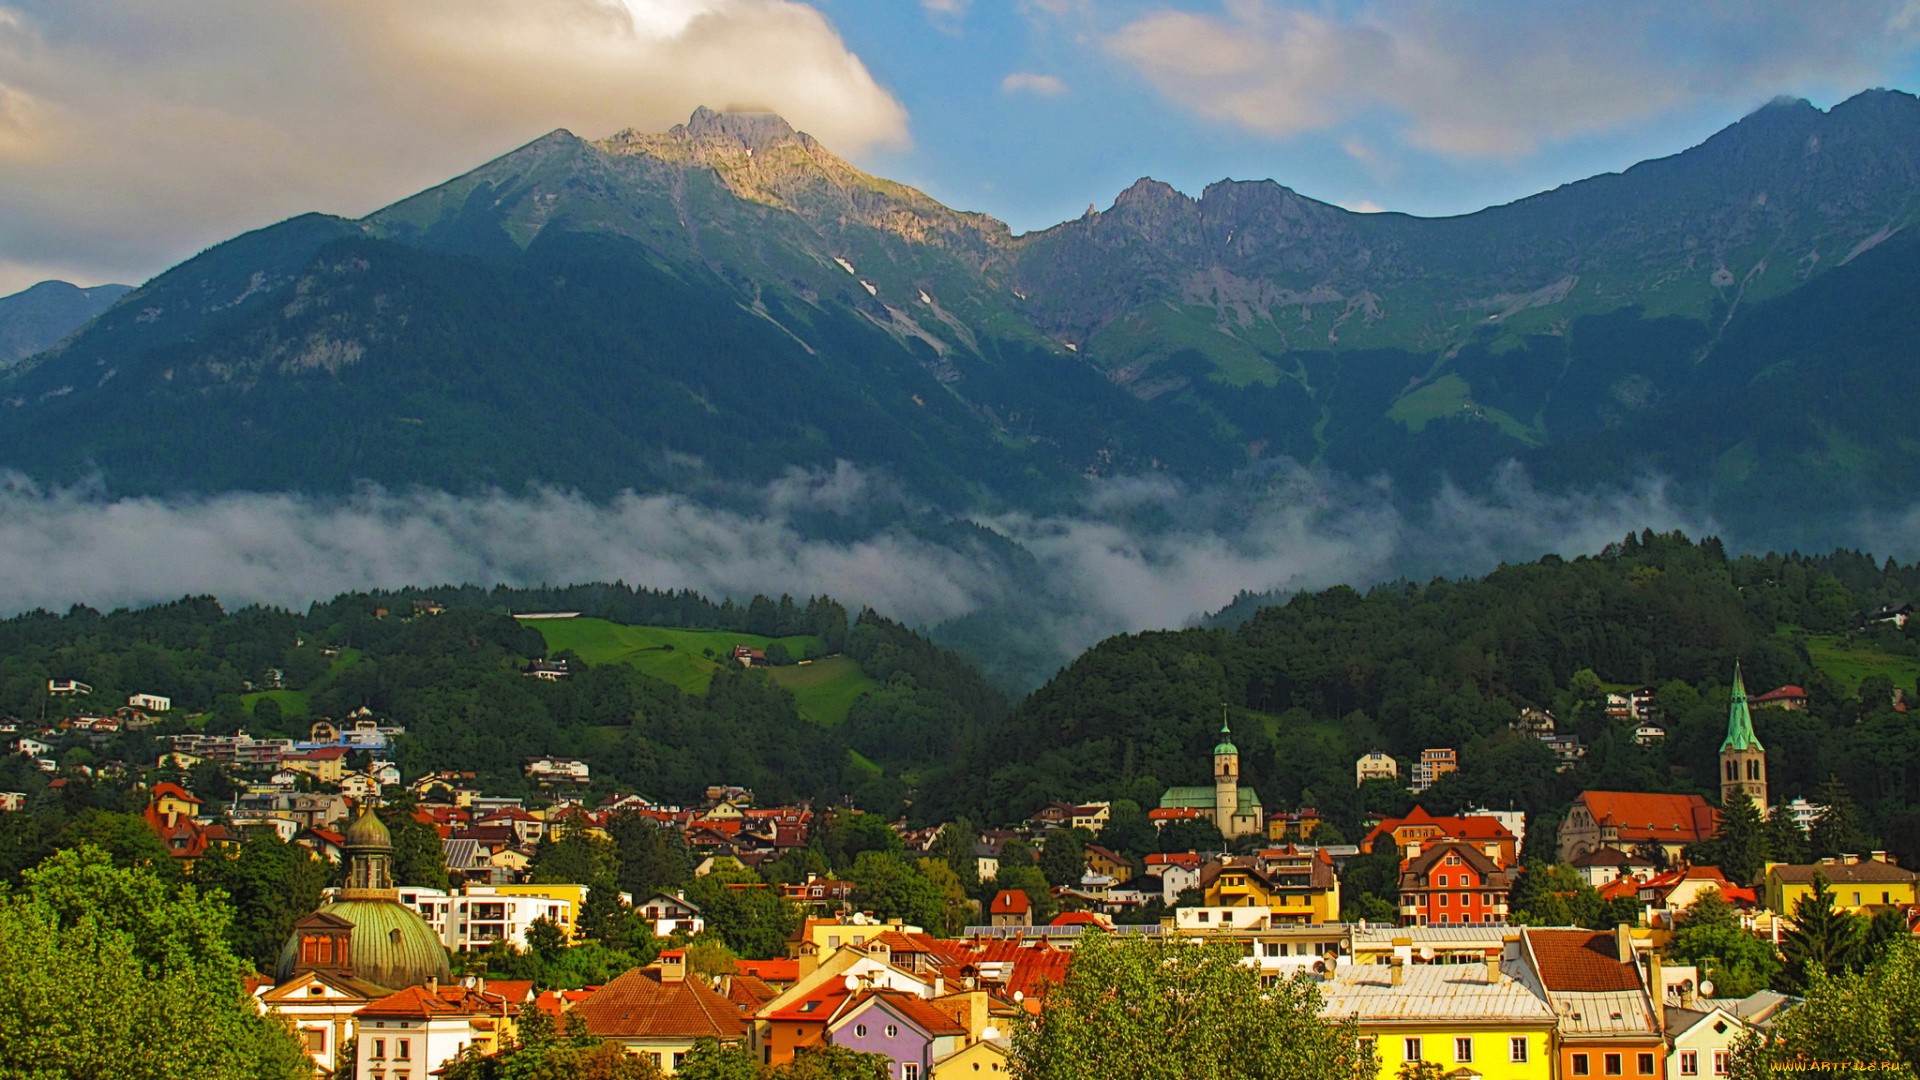 инсбрук, австрия, города, -, панорамы, горы, панорама, дома, инсбрук, австрия